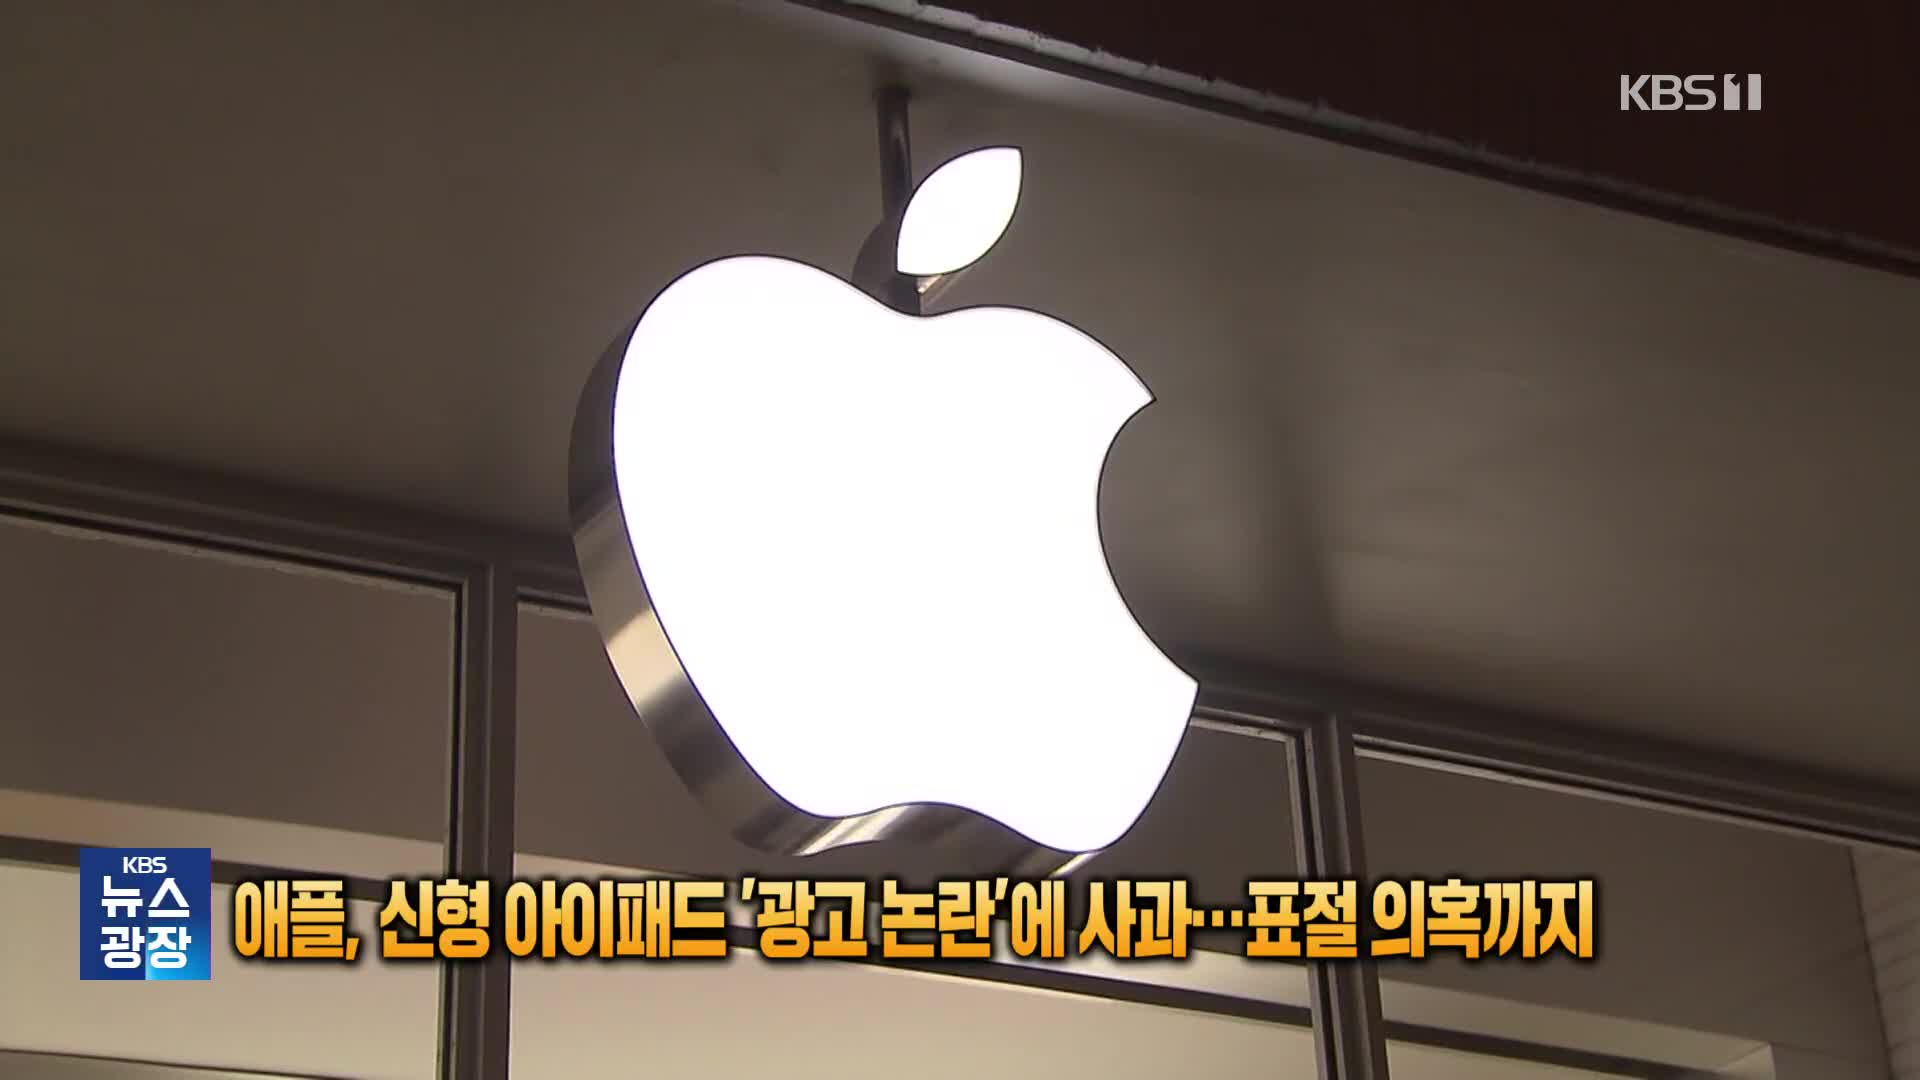 애플, 신형 아이패드 광고 비판에 사과…유사성 의혹까지